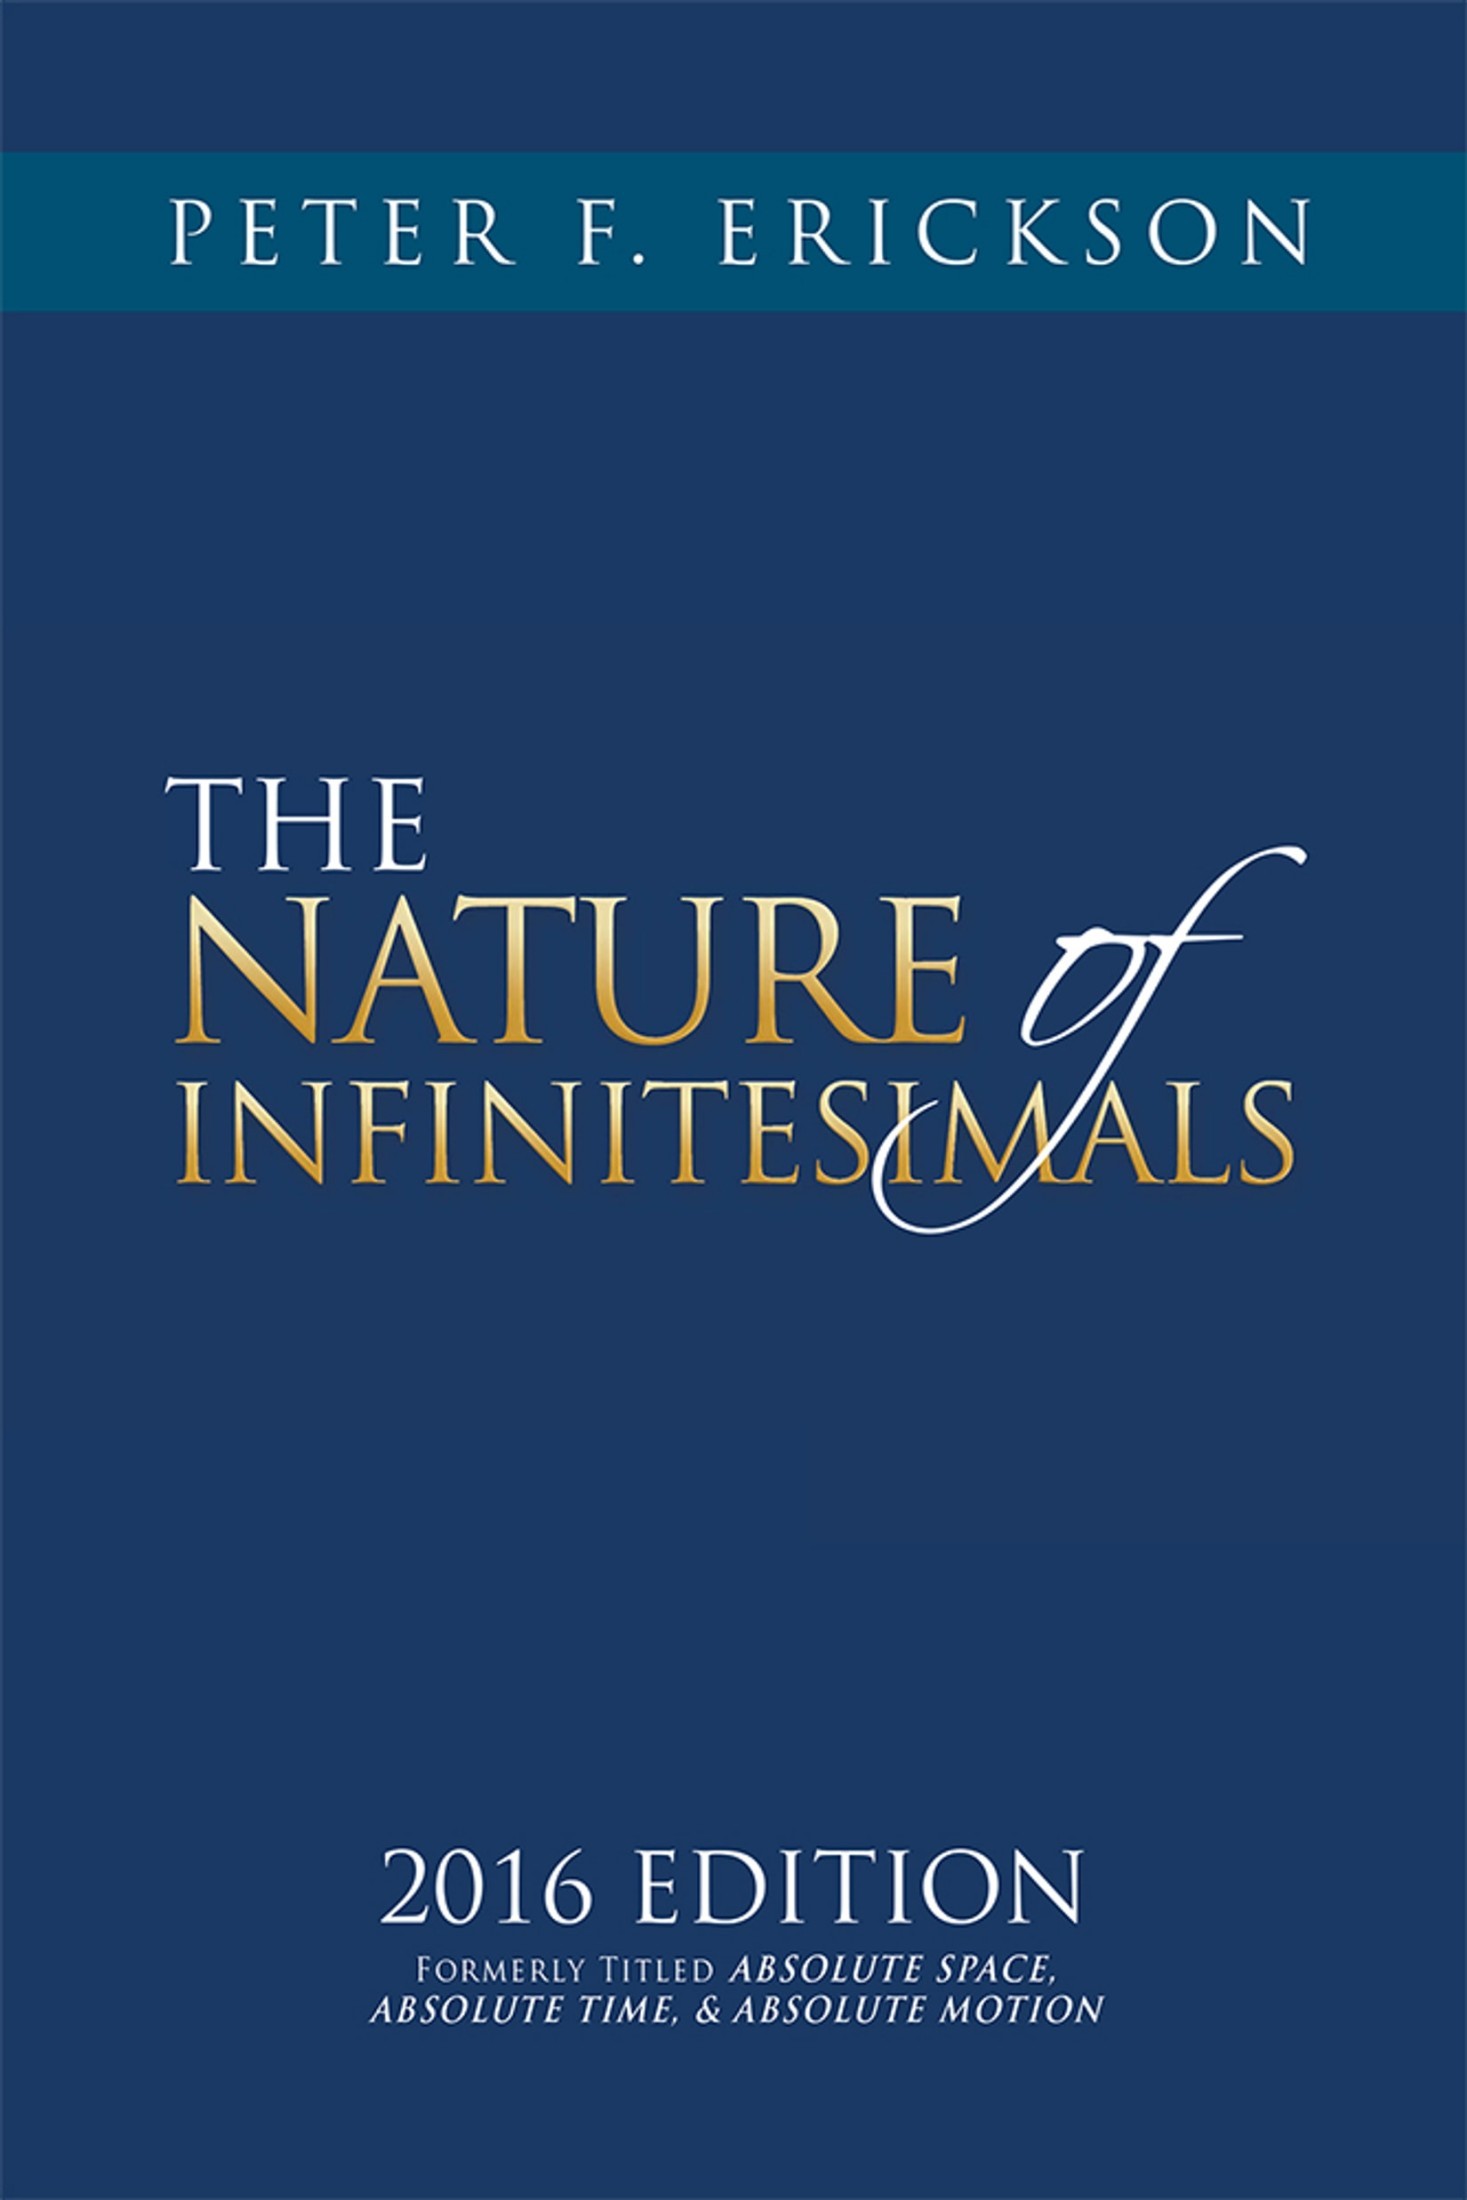 The Nature of Infinitesimals